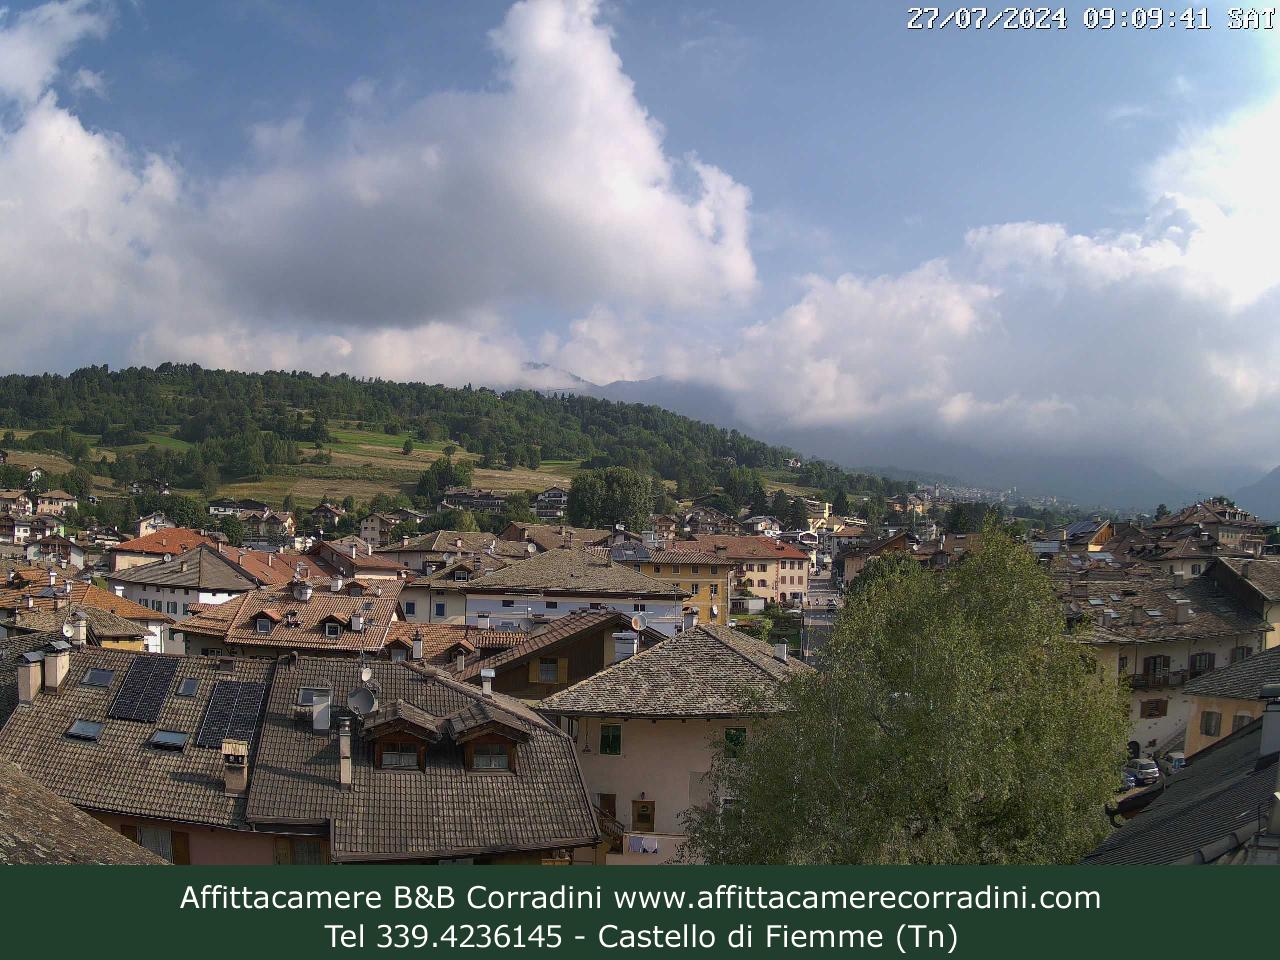 Webcam Affittacamere B&B Corradini - Castello di Fiemme